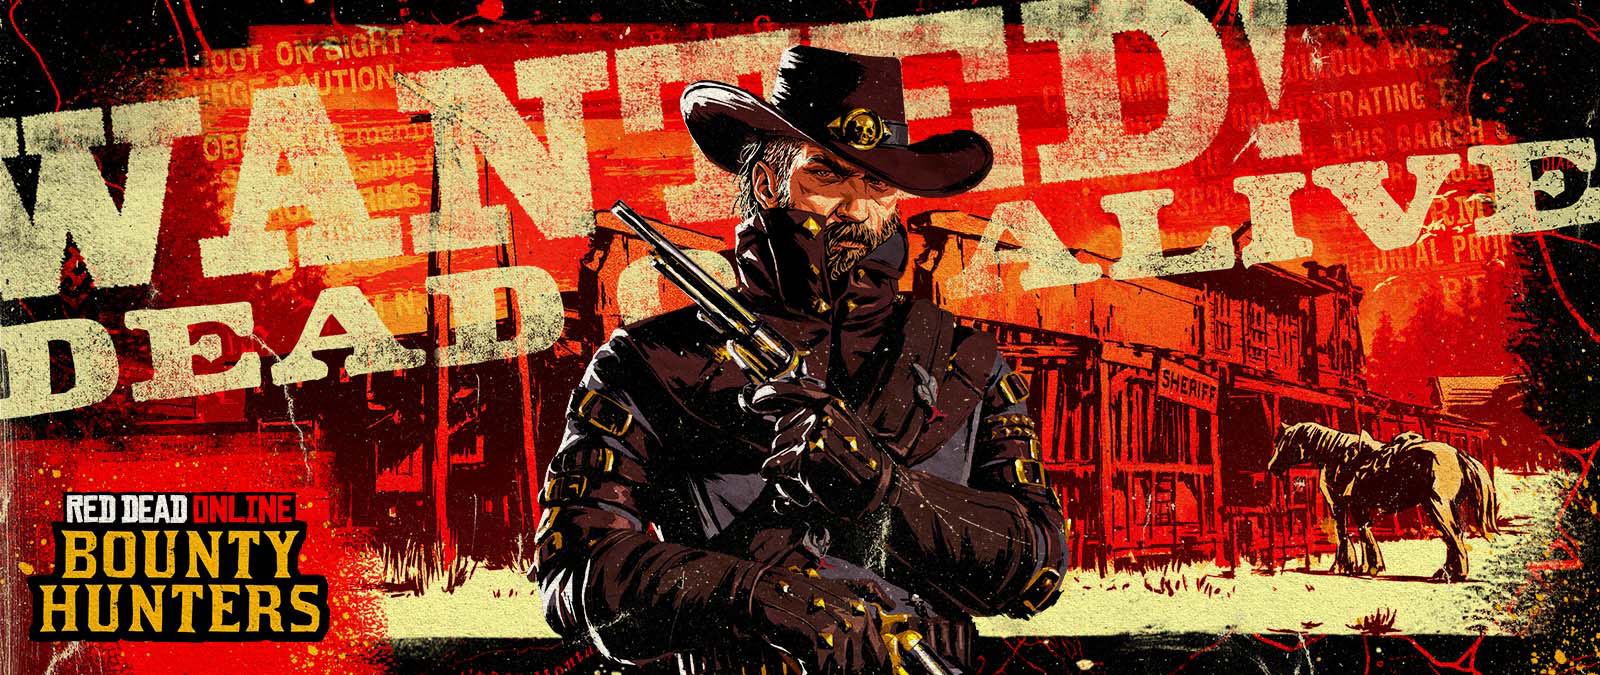 Red Dead Online: Bounty Hunters. Procurado! Morto ou vivo. Um cowboy a segurar dois revólveres em frente a um antigo edifício do xerife.